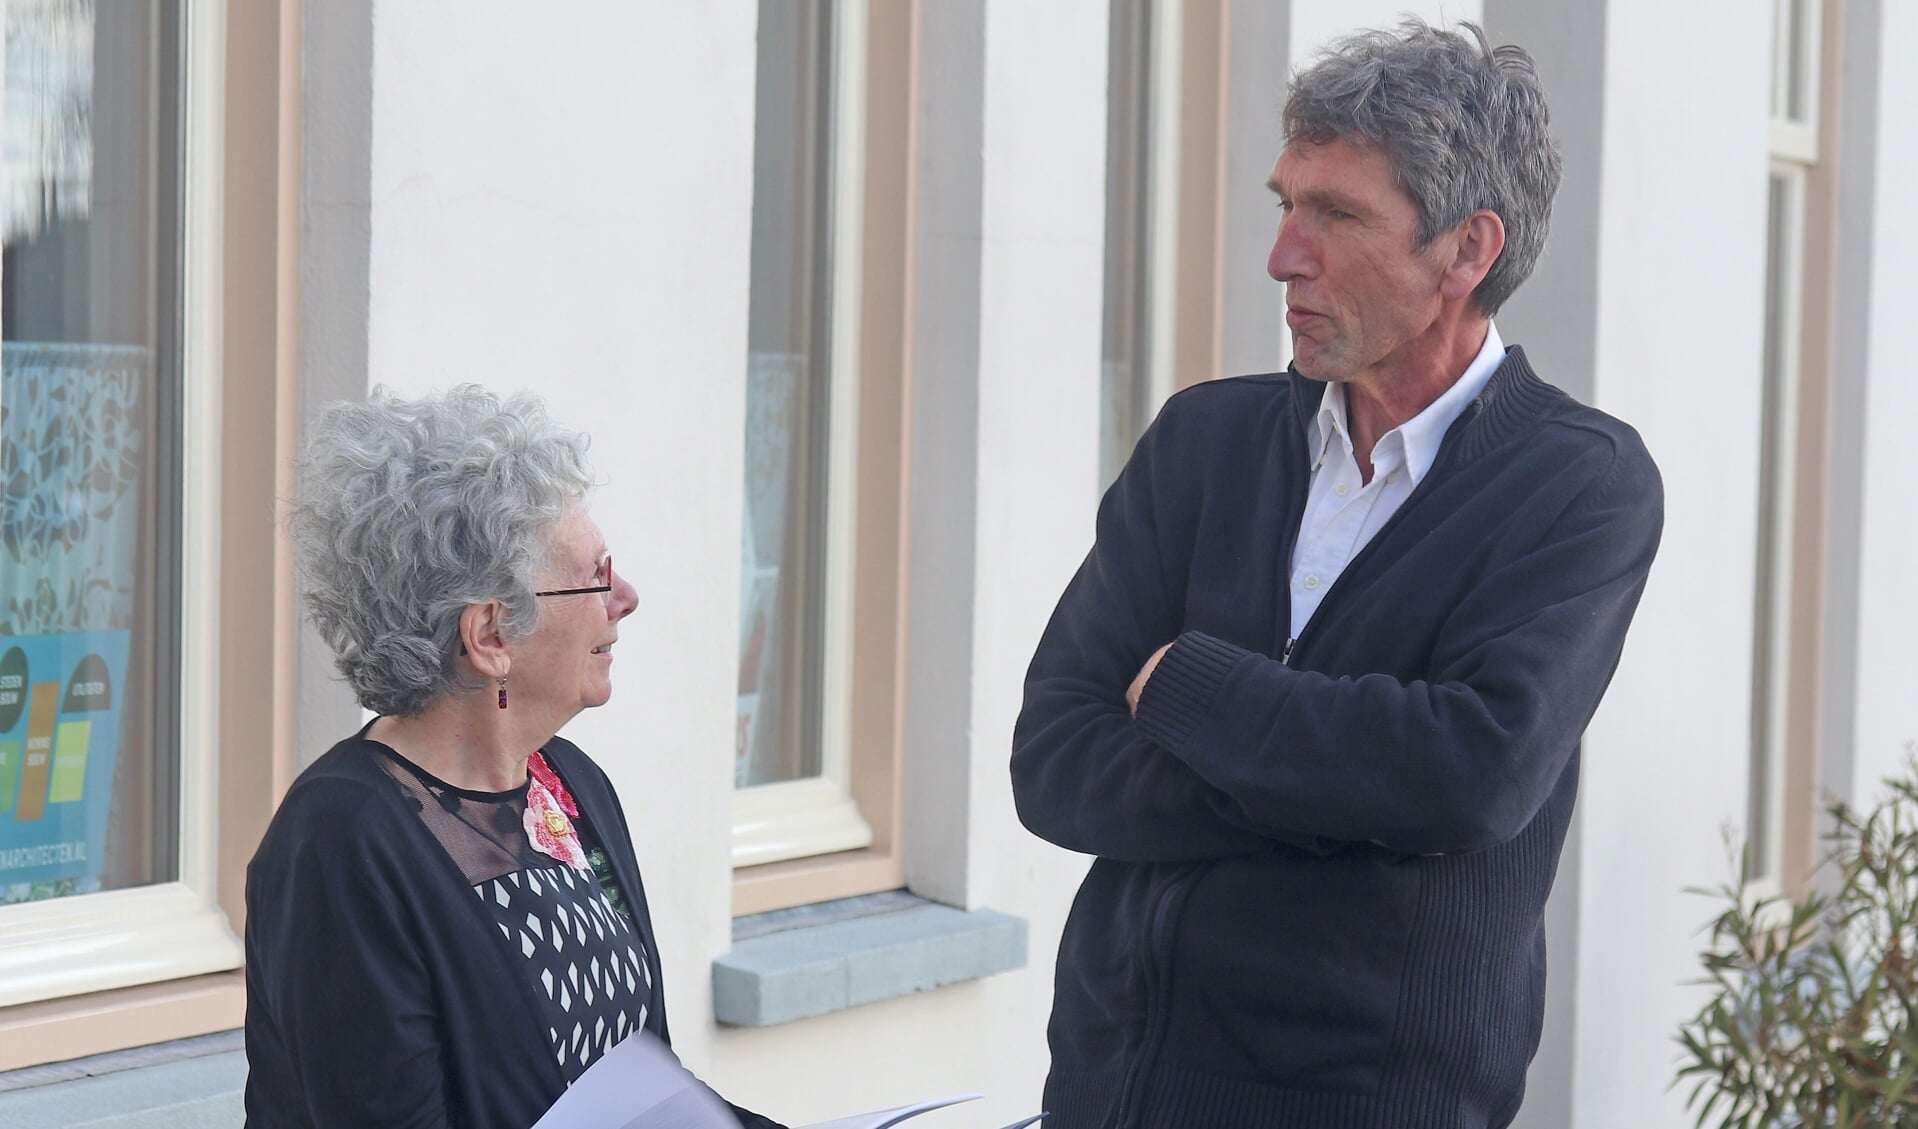 Manja Pach en Peter Kooij in gesprek over het nieuwe boek. Foto: Sander Grootendorst